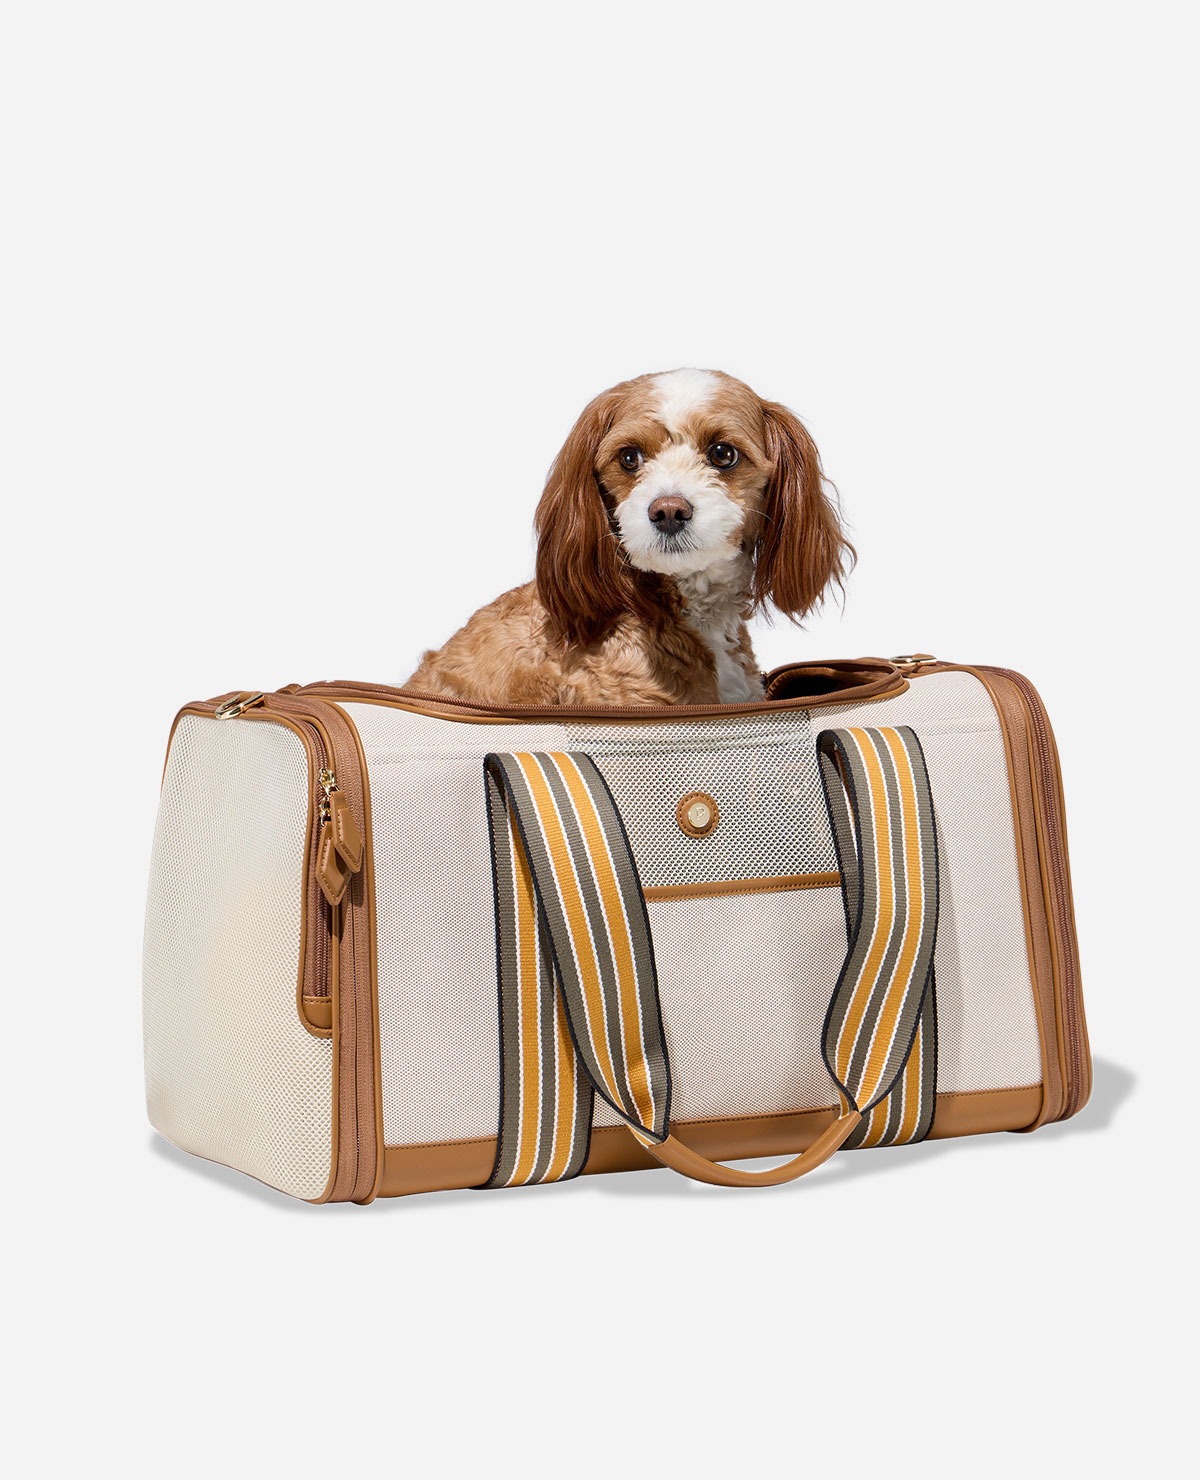 Personalized Pet Bag Carrier Monogram Dog Travel Bag 